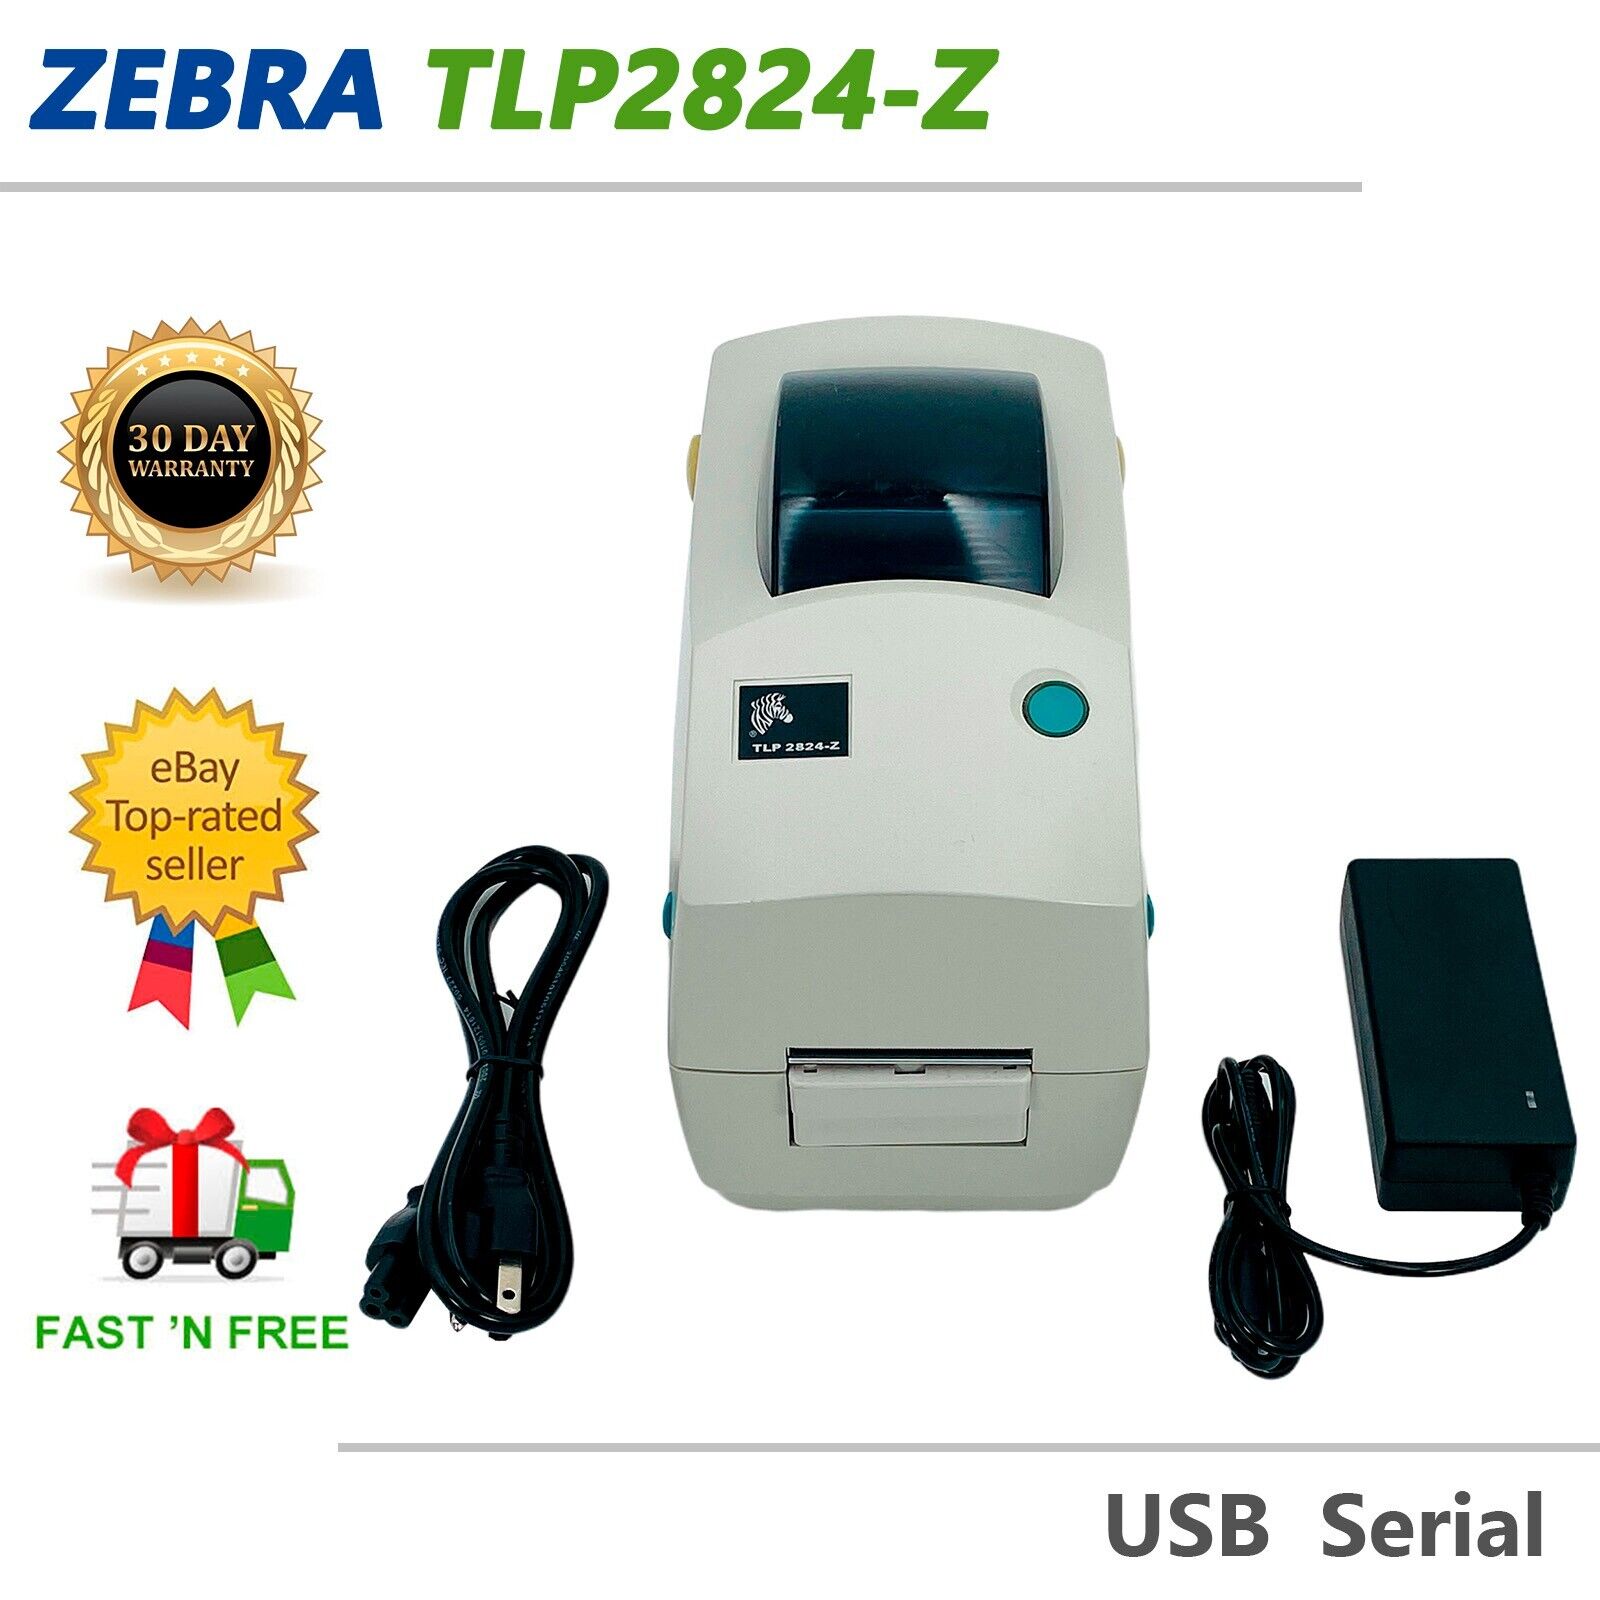 Zebra TLP2824-Z Thermal Transfer Barcode Label Printer Dispenser USB Serial